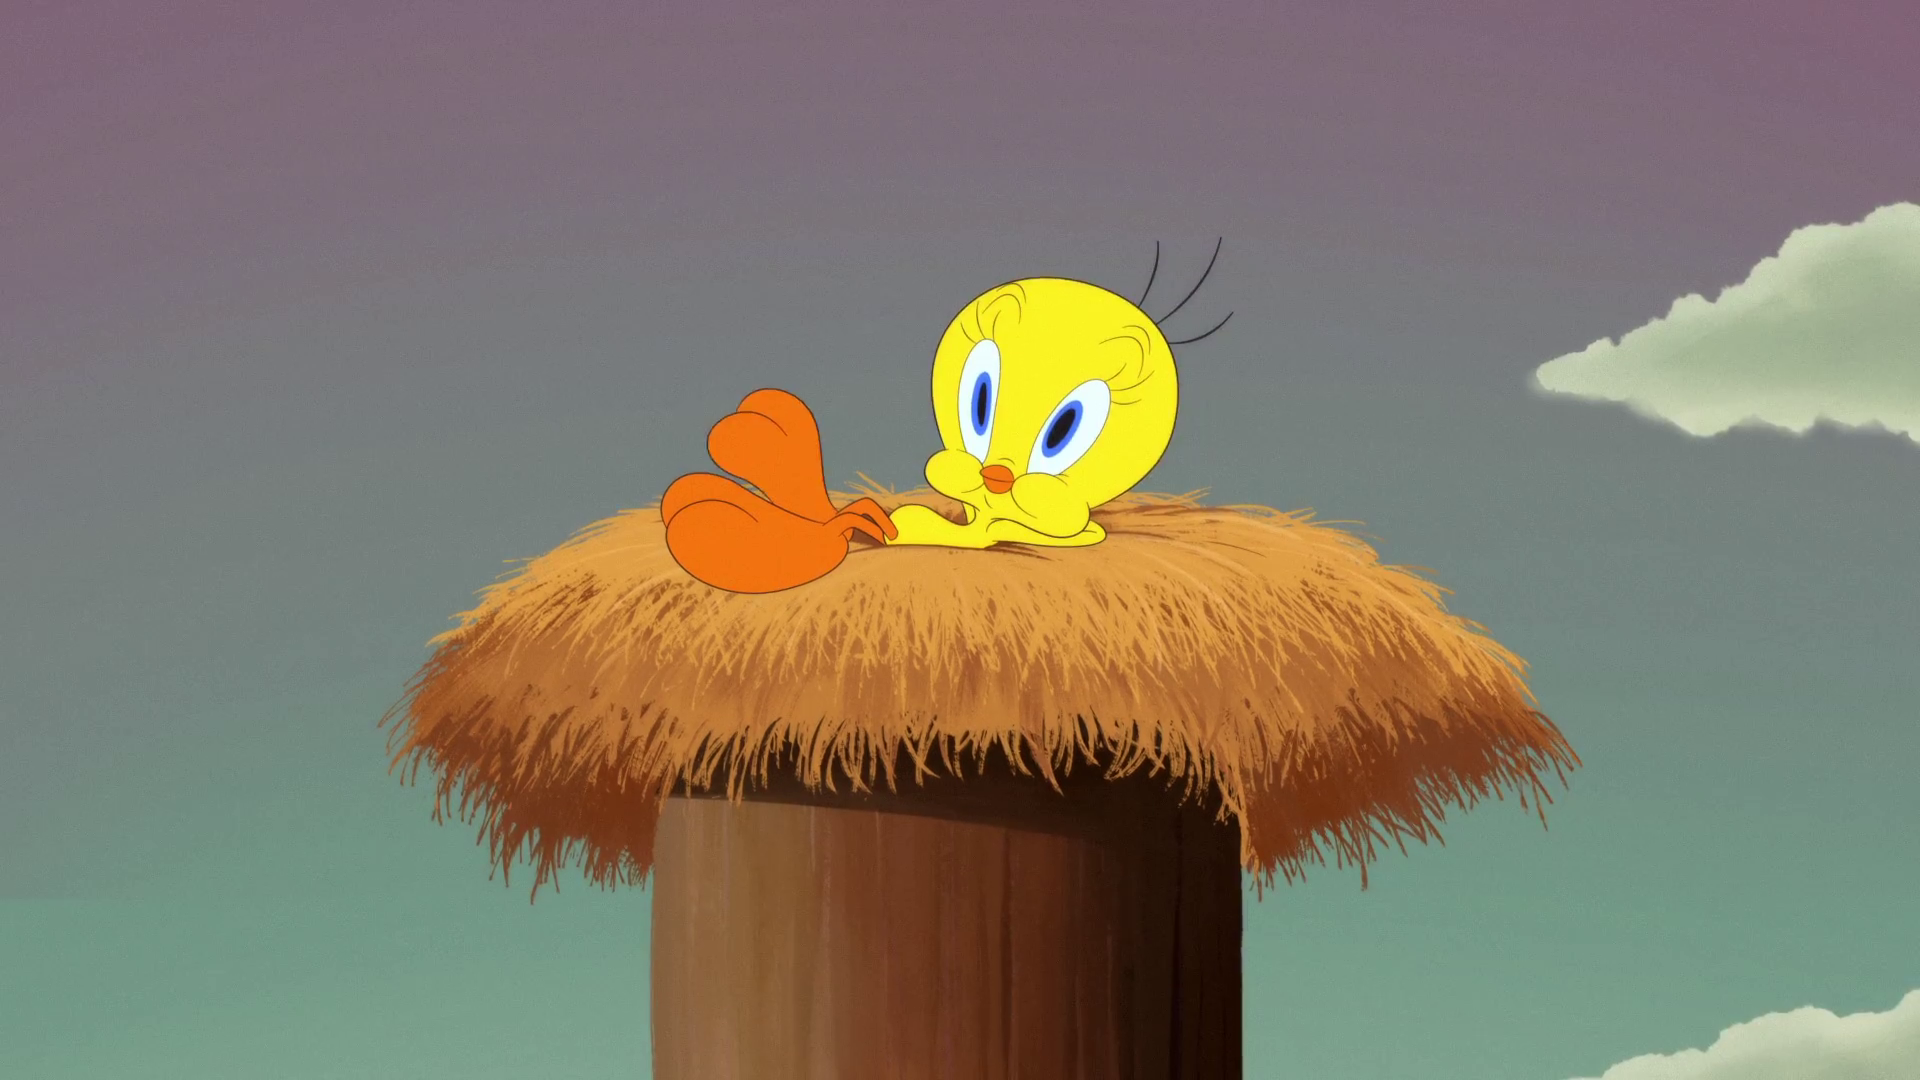 Daffy Duck, Looney Tunes Wiki